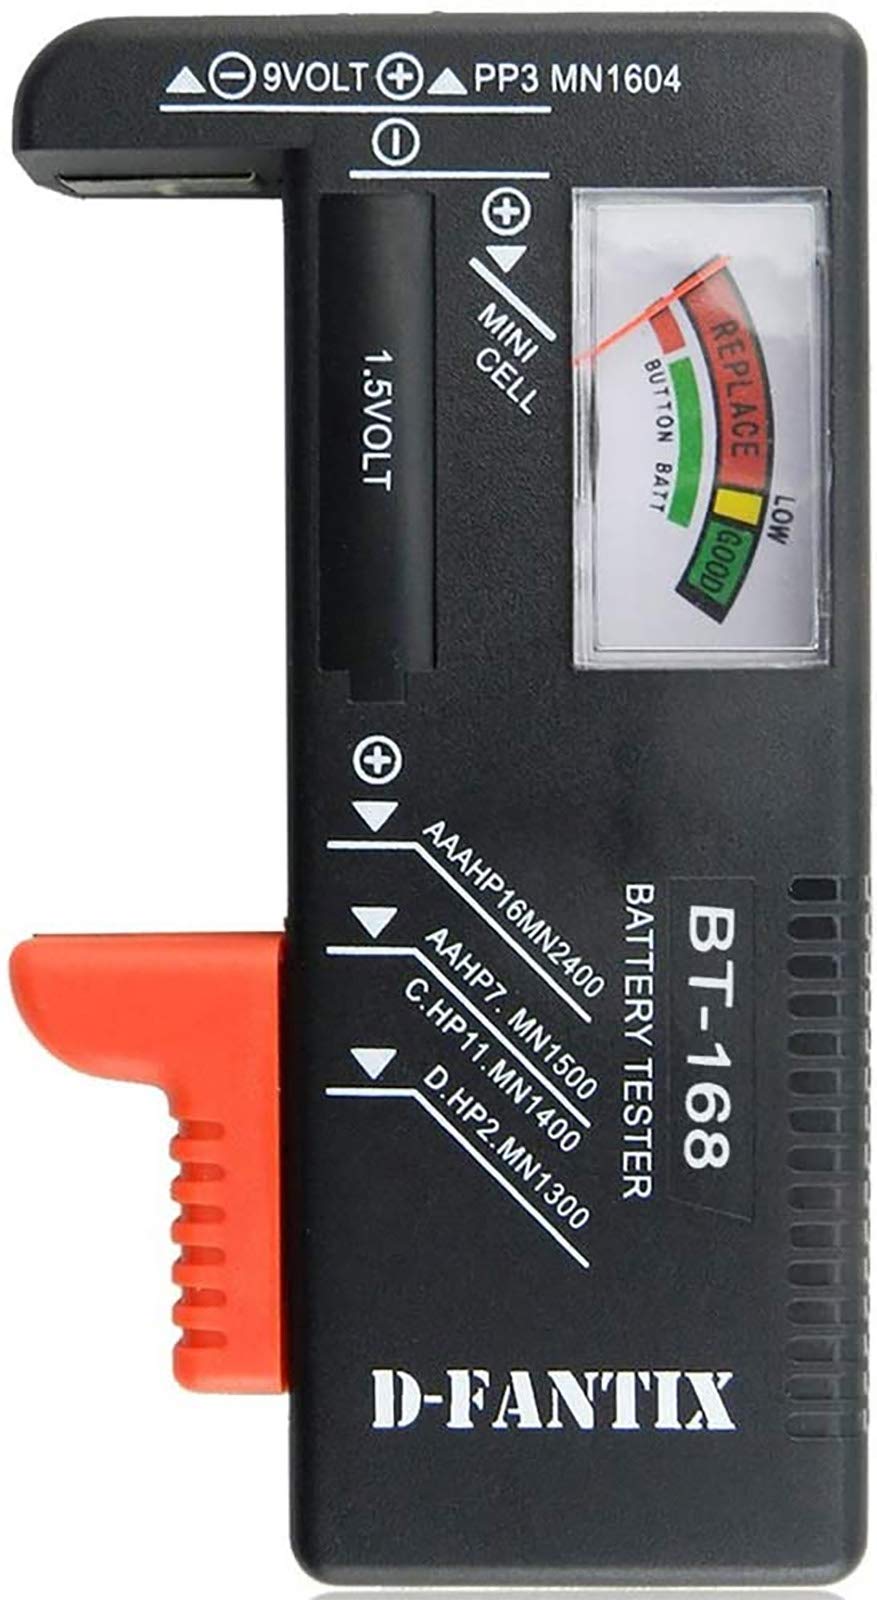 D-FantiX Analogue Battery Tester, Battery Checker for AA AAA C D 9V 1.5V Button Cell Batteries (Model: BT-168)